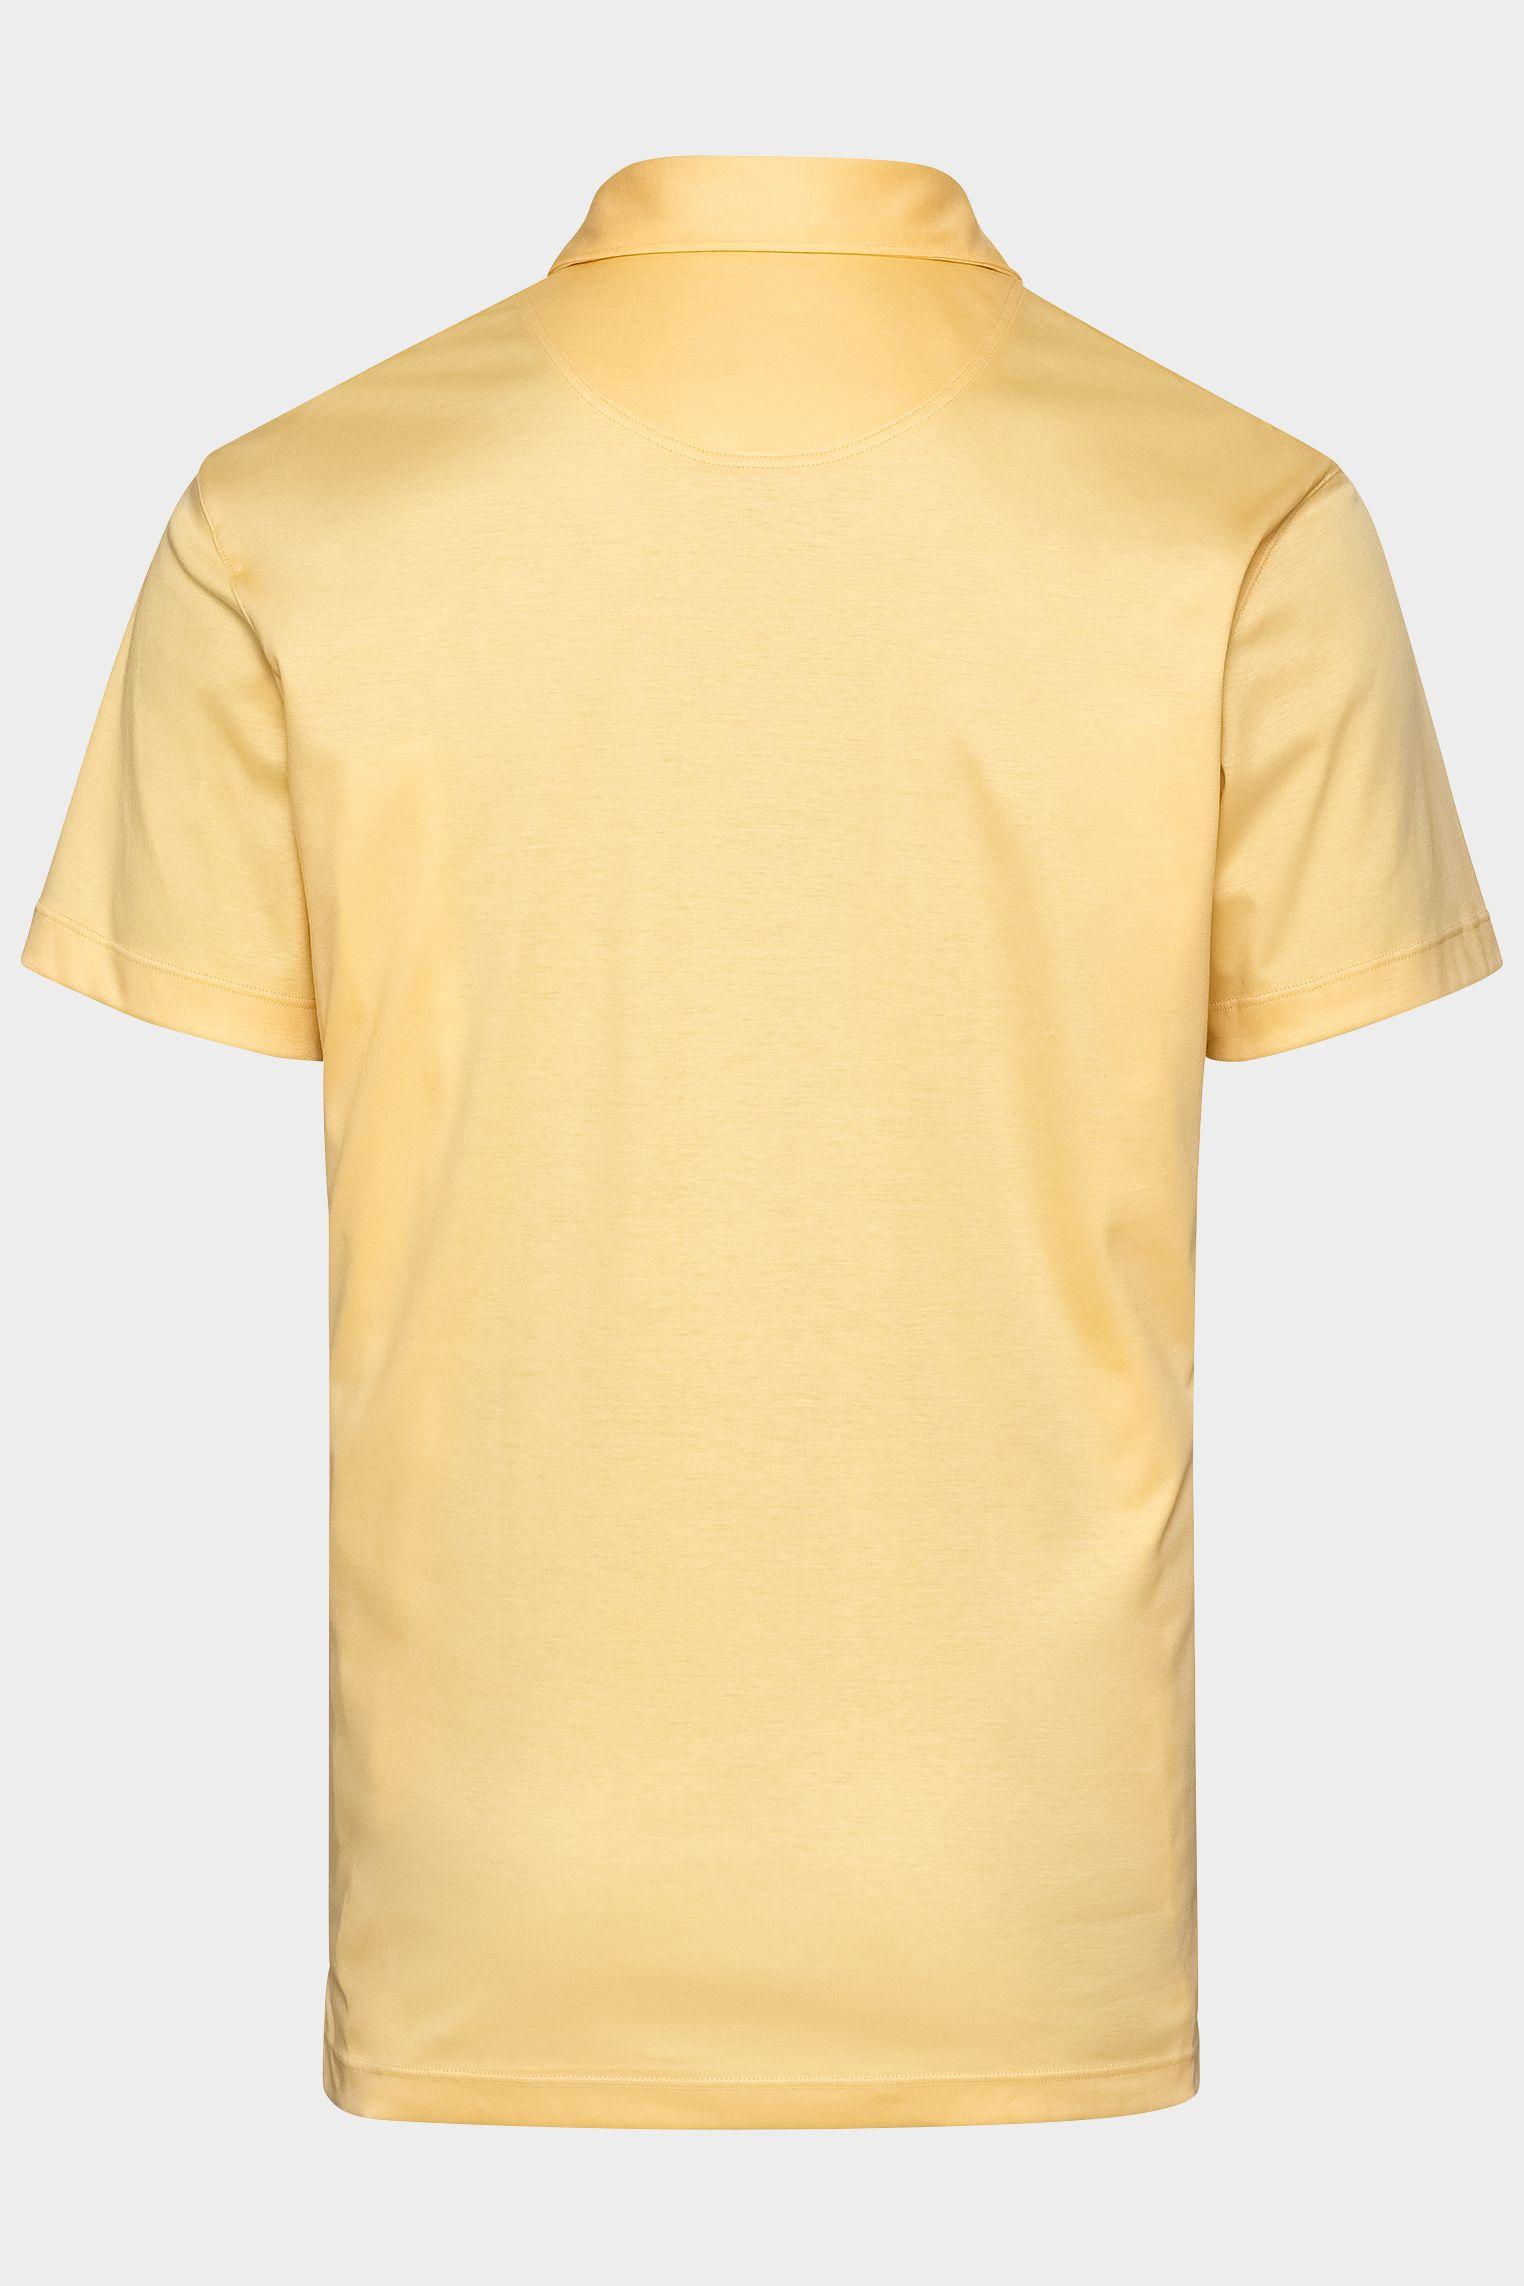 рубашка-поло M PESO желтый M-PESO_180031_220 ,photo 3